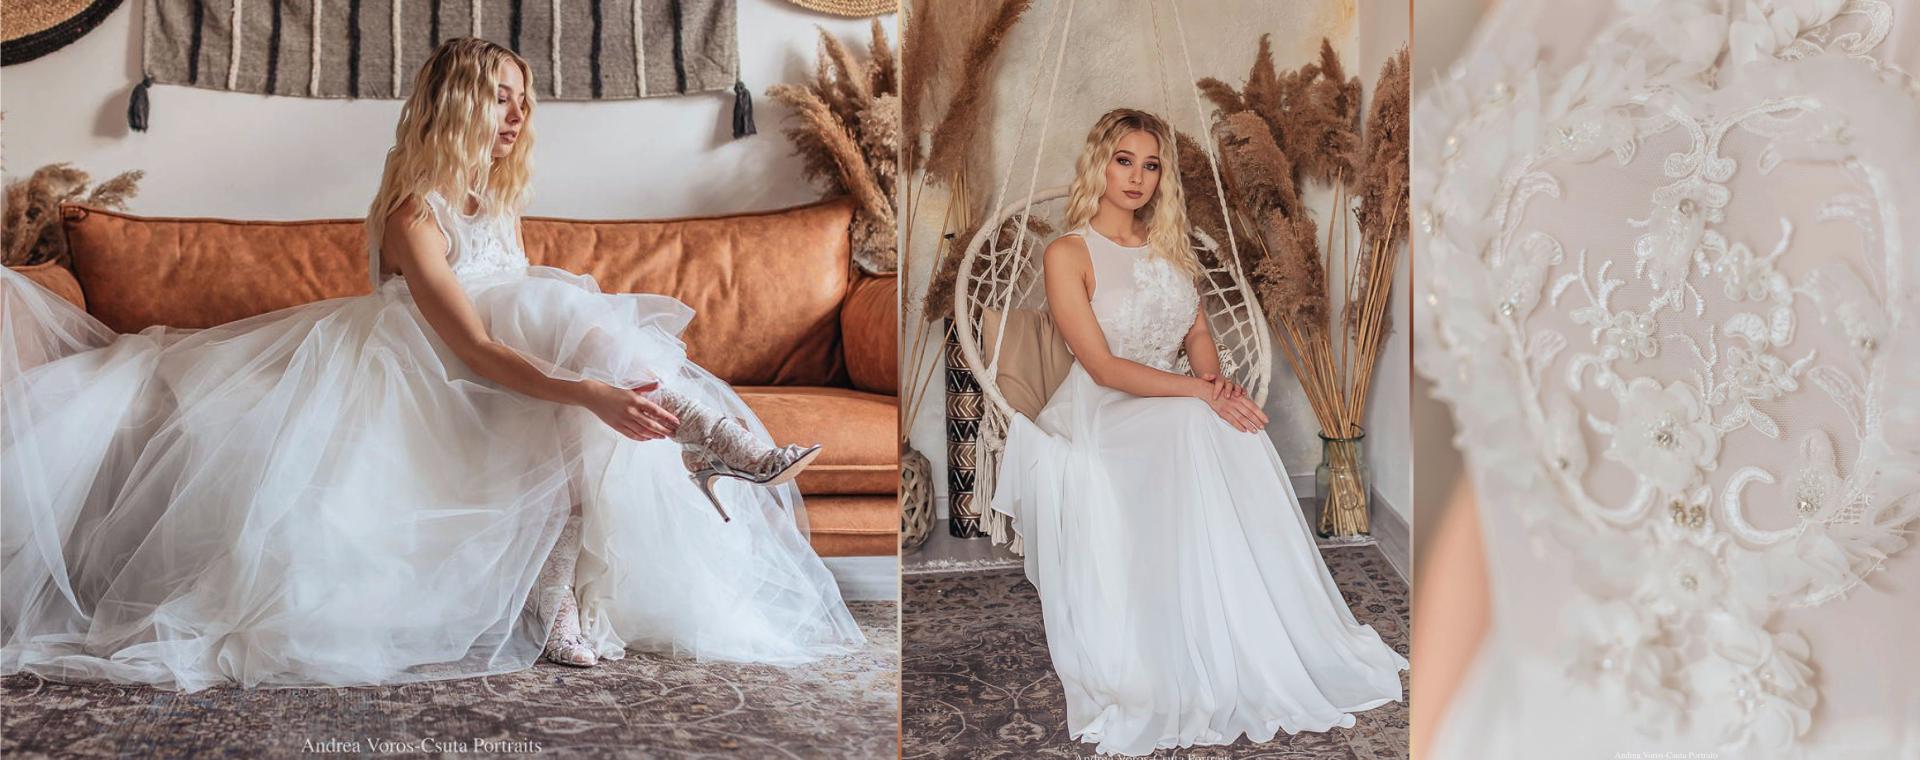 Gévai Gabi Costumes - Menyasszonyi ruhák